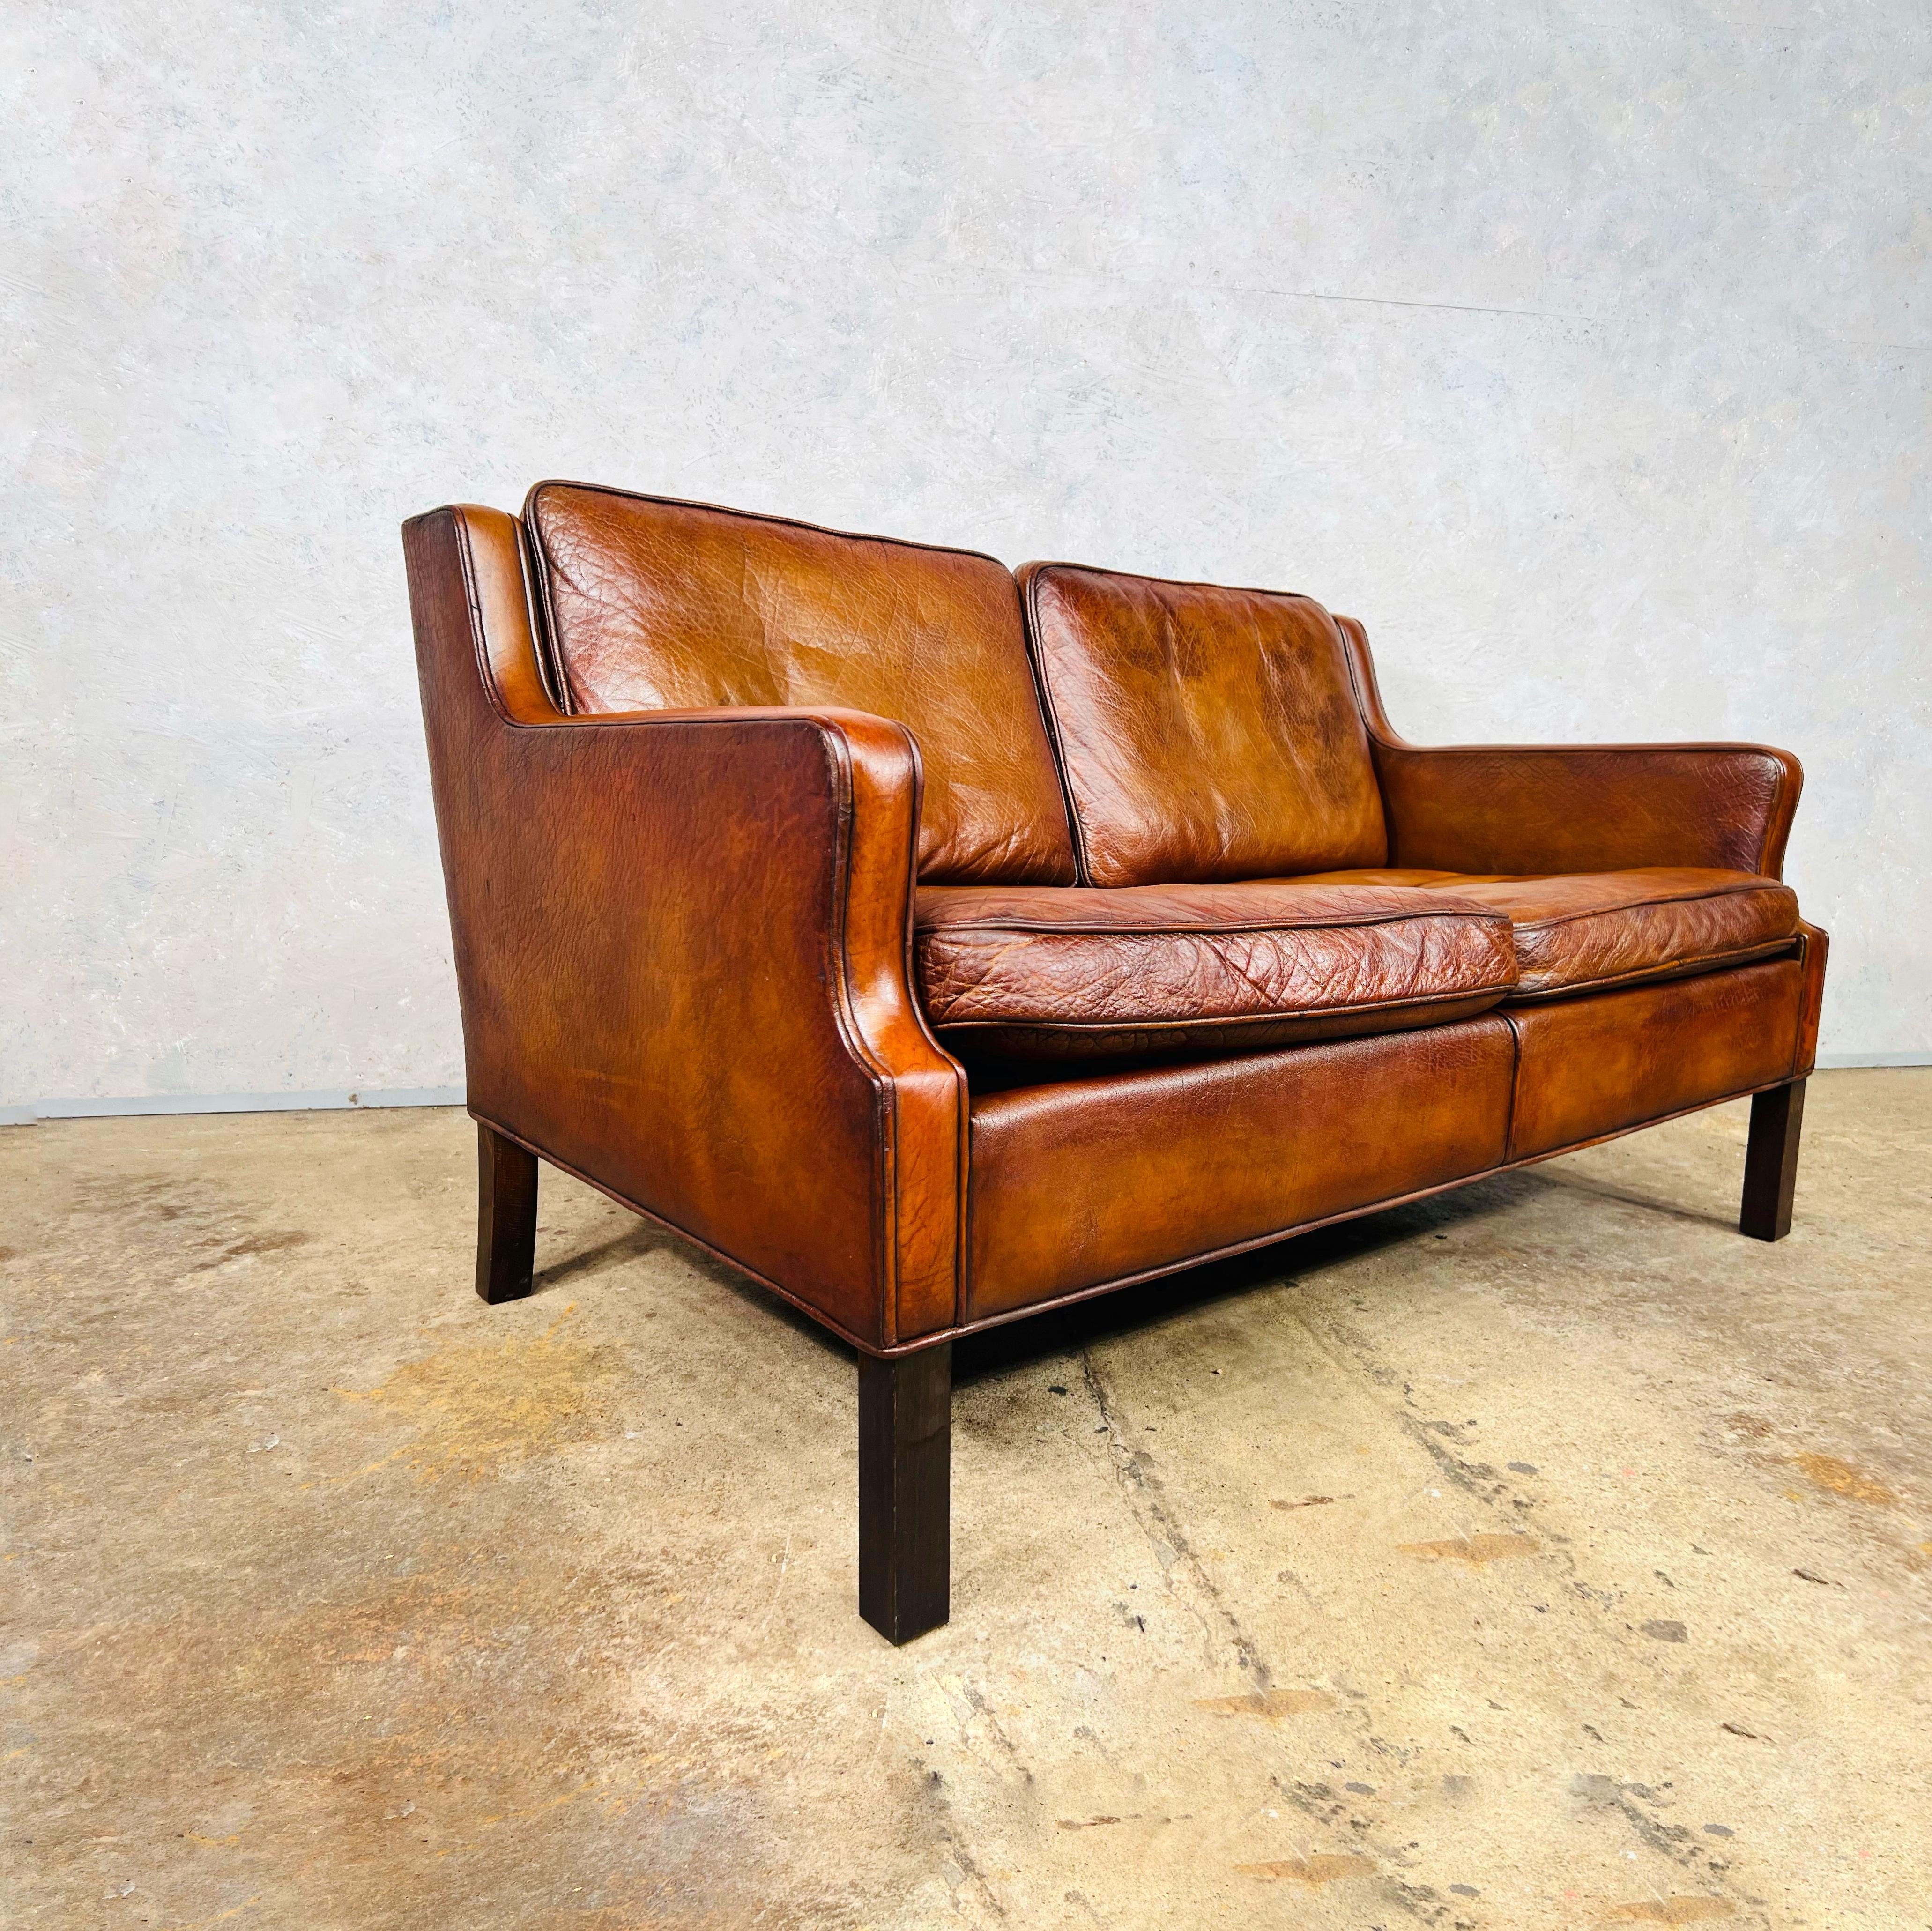 70s leather sofa